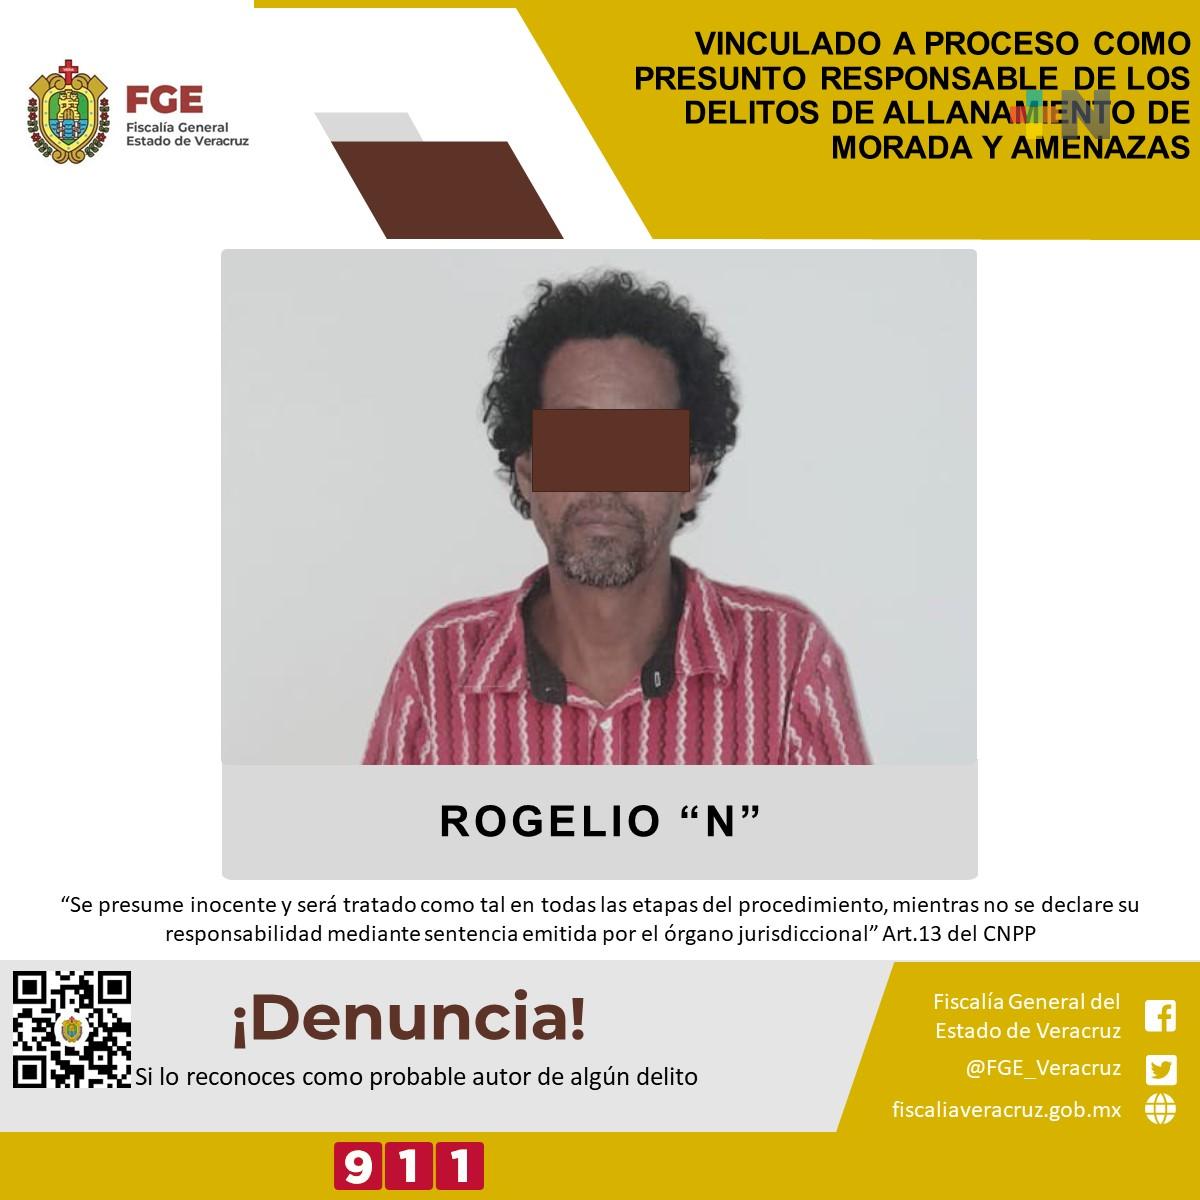 Rogelio «N» fue vinculado a proceso como responsable de allanamiento de morada y amenazas